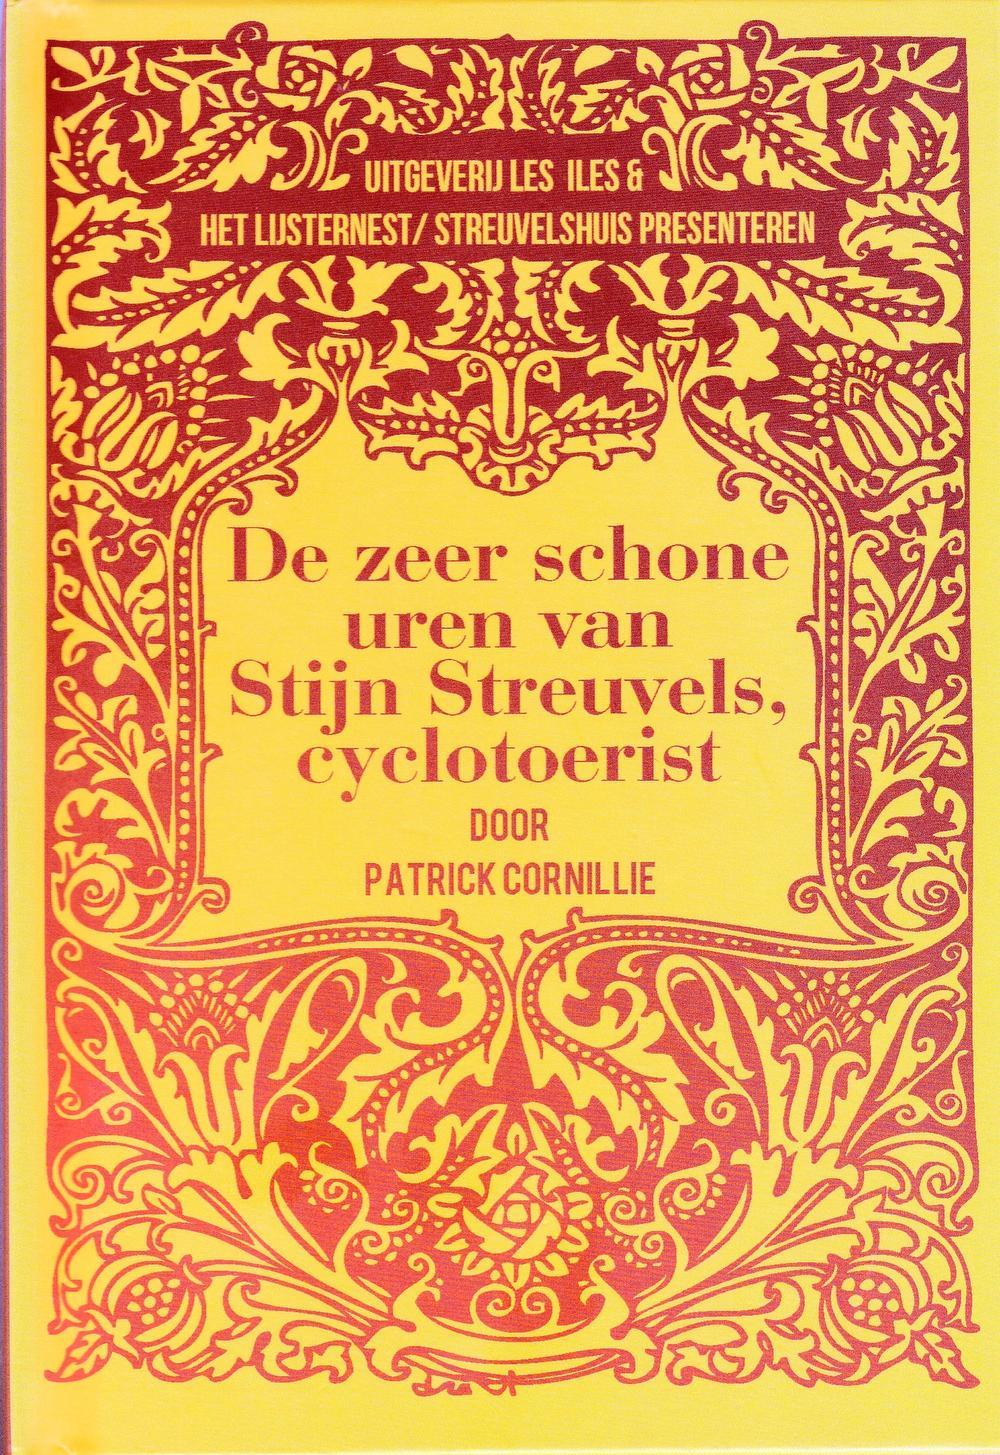 Nieuw boek belicht leven van Stijn Streuvels als... cyclotoerist